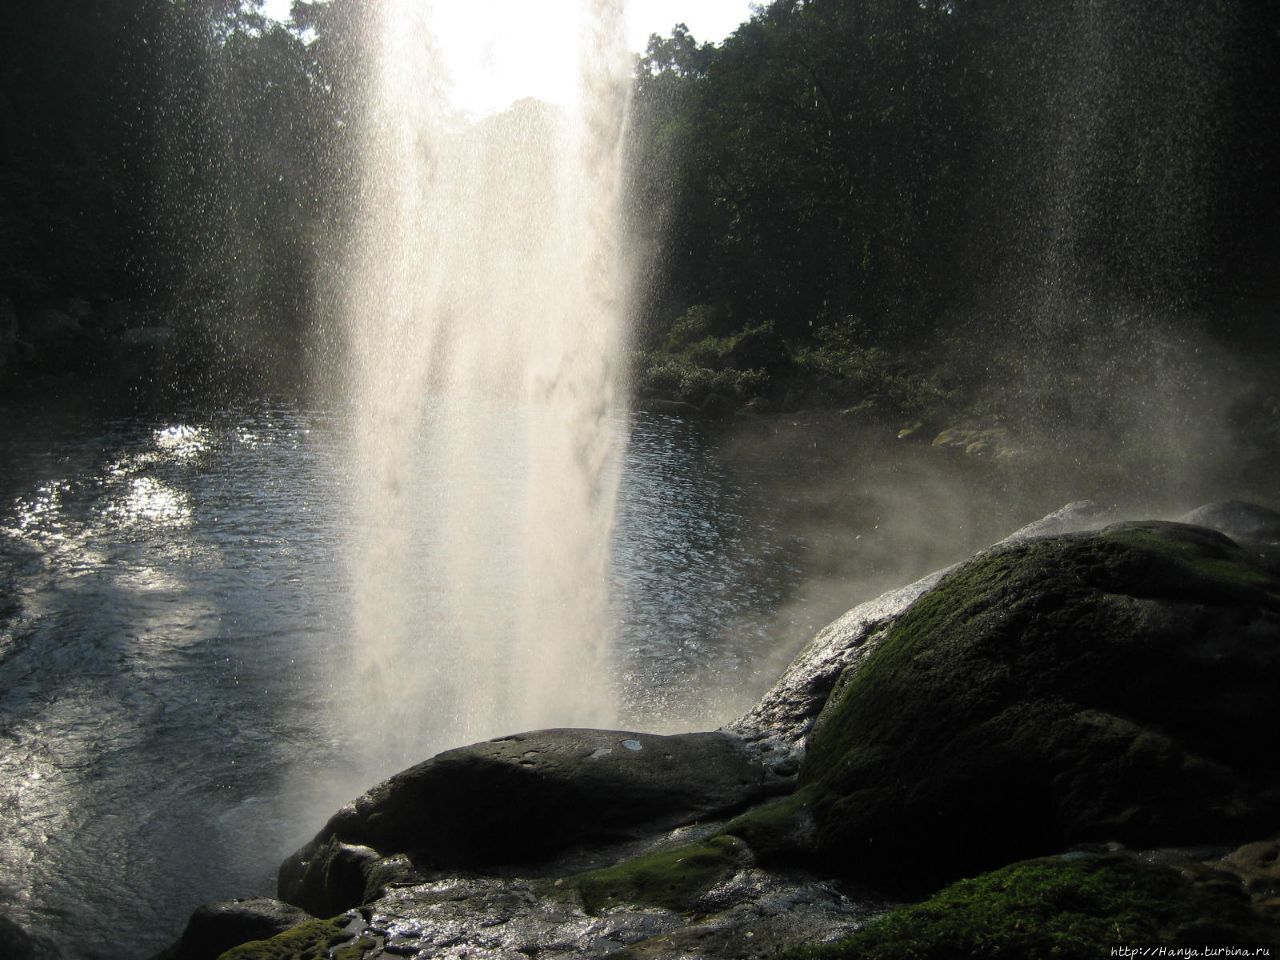 Водопад Мисоль-Ха Мисоль-Ха водопад, Мексика